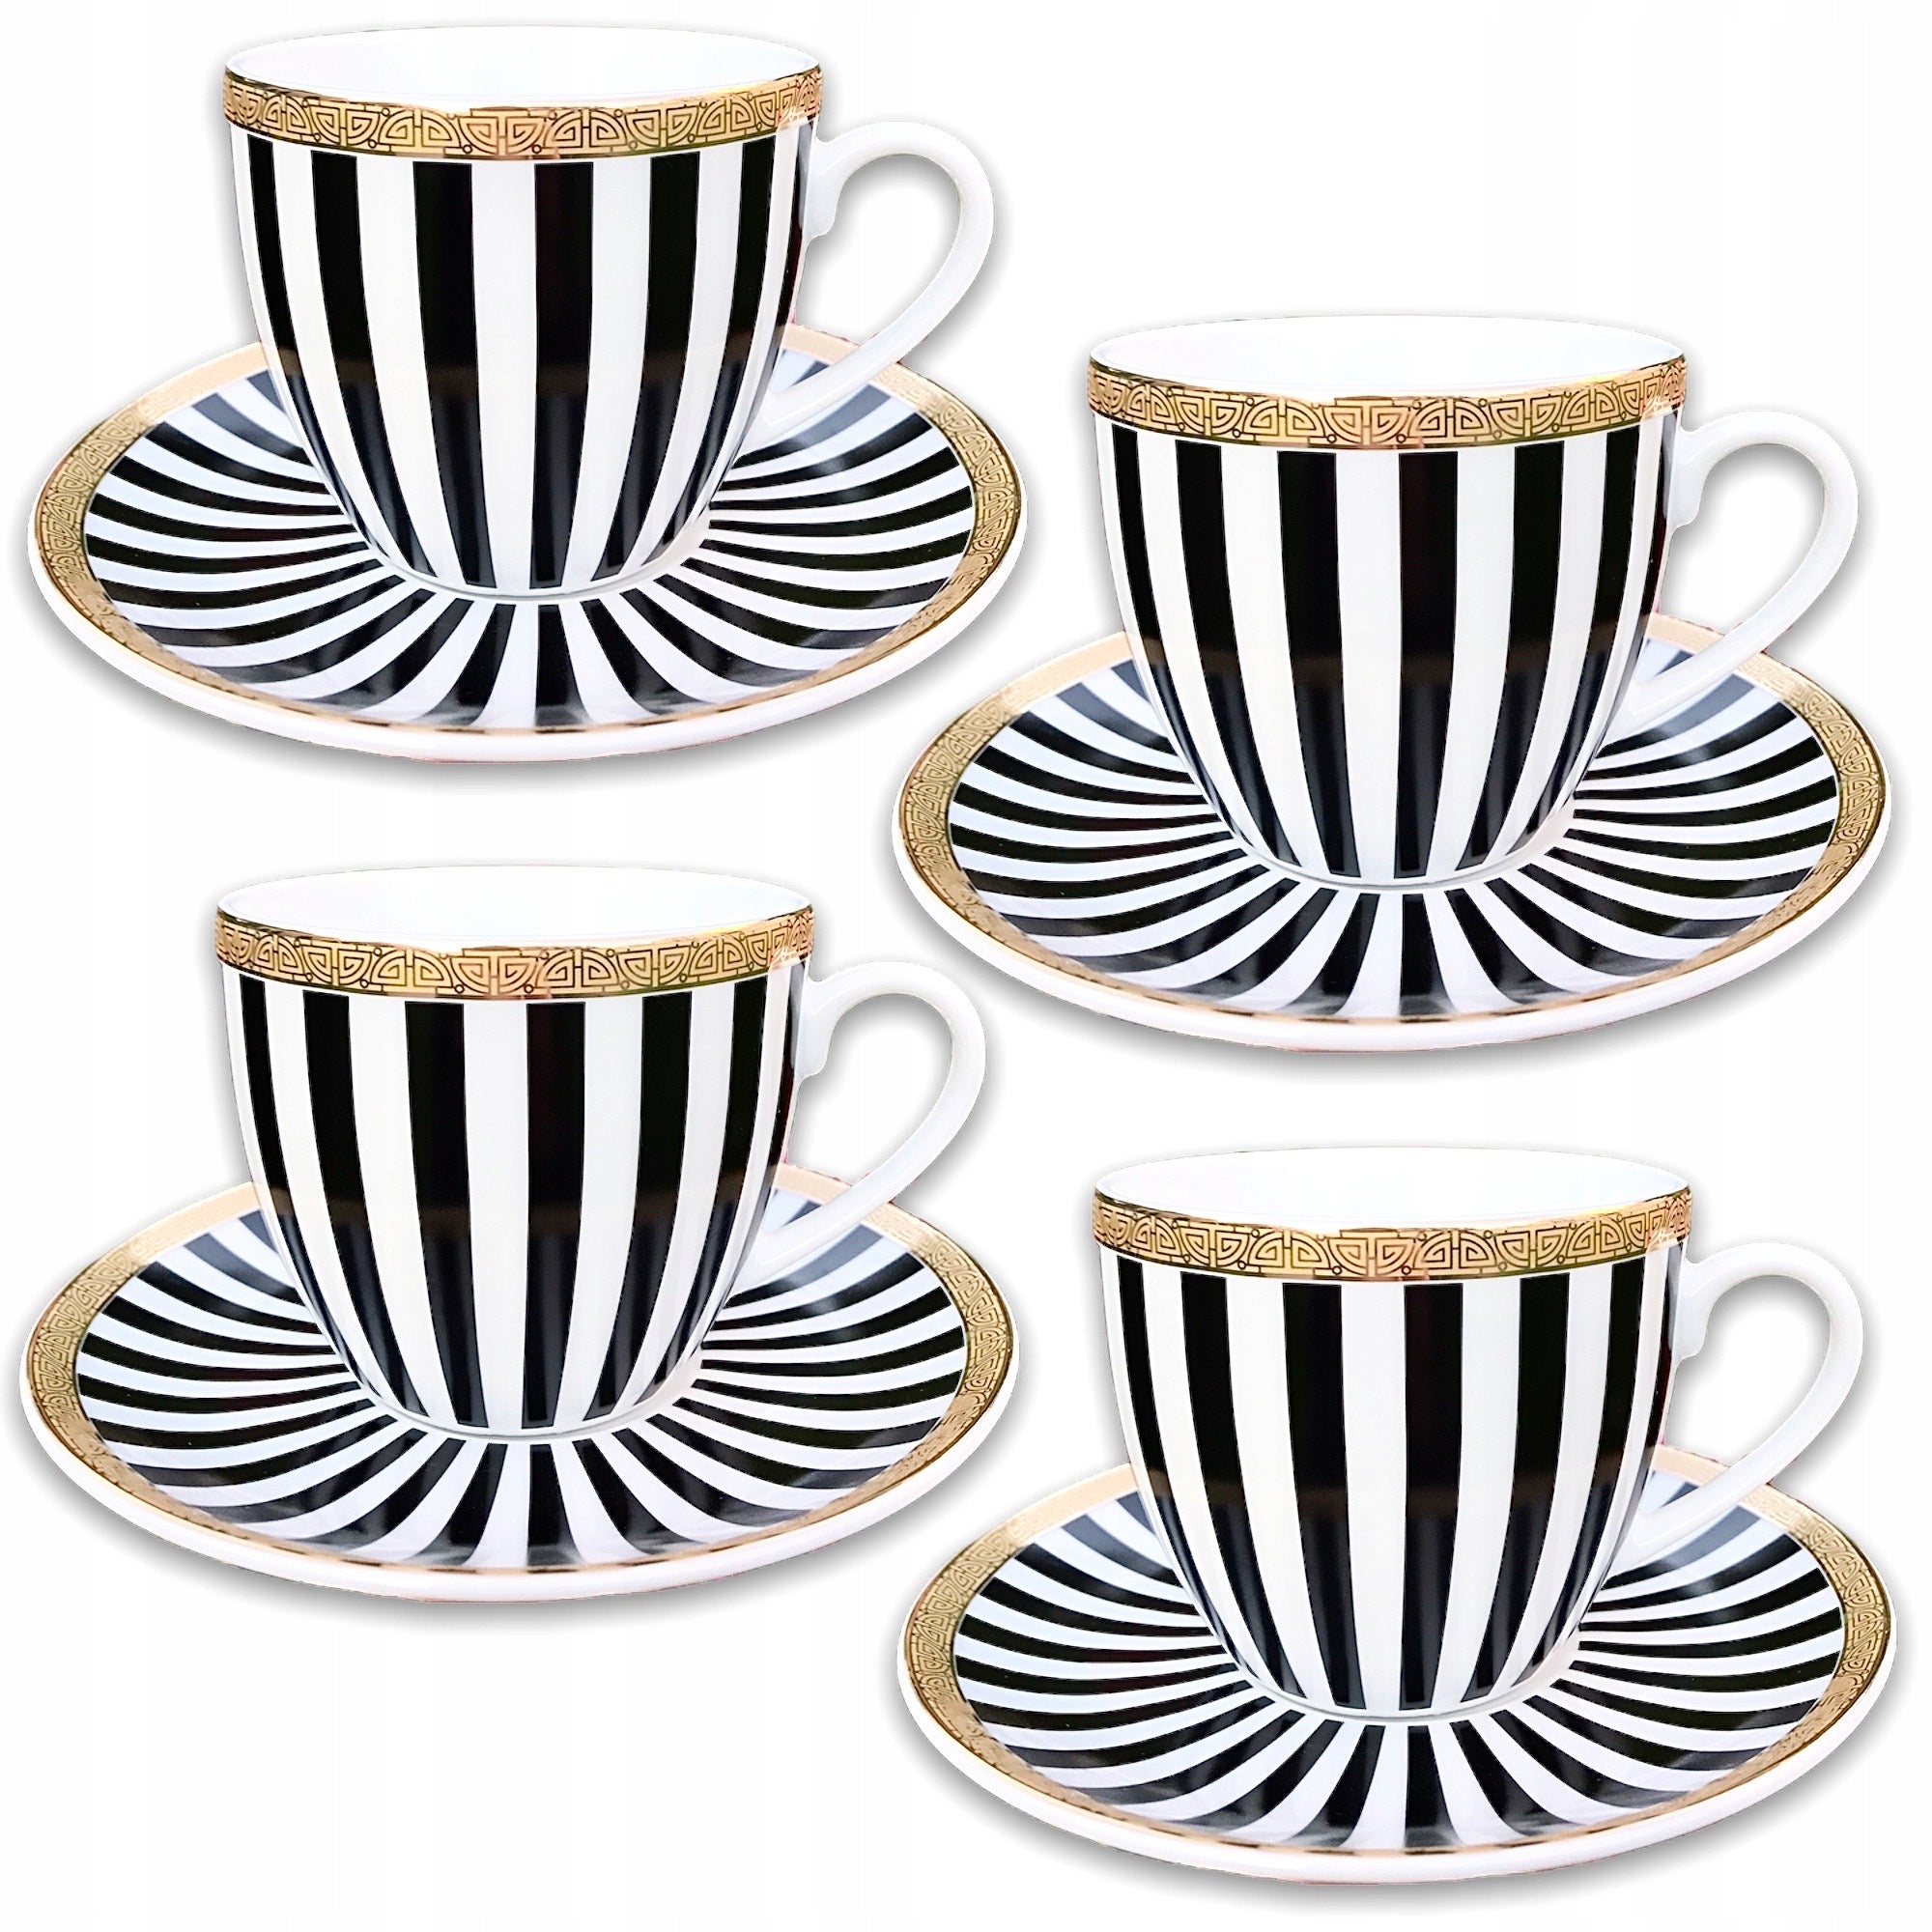 Sett med 4 kaffekopper Komplett porselensett med striper